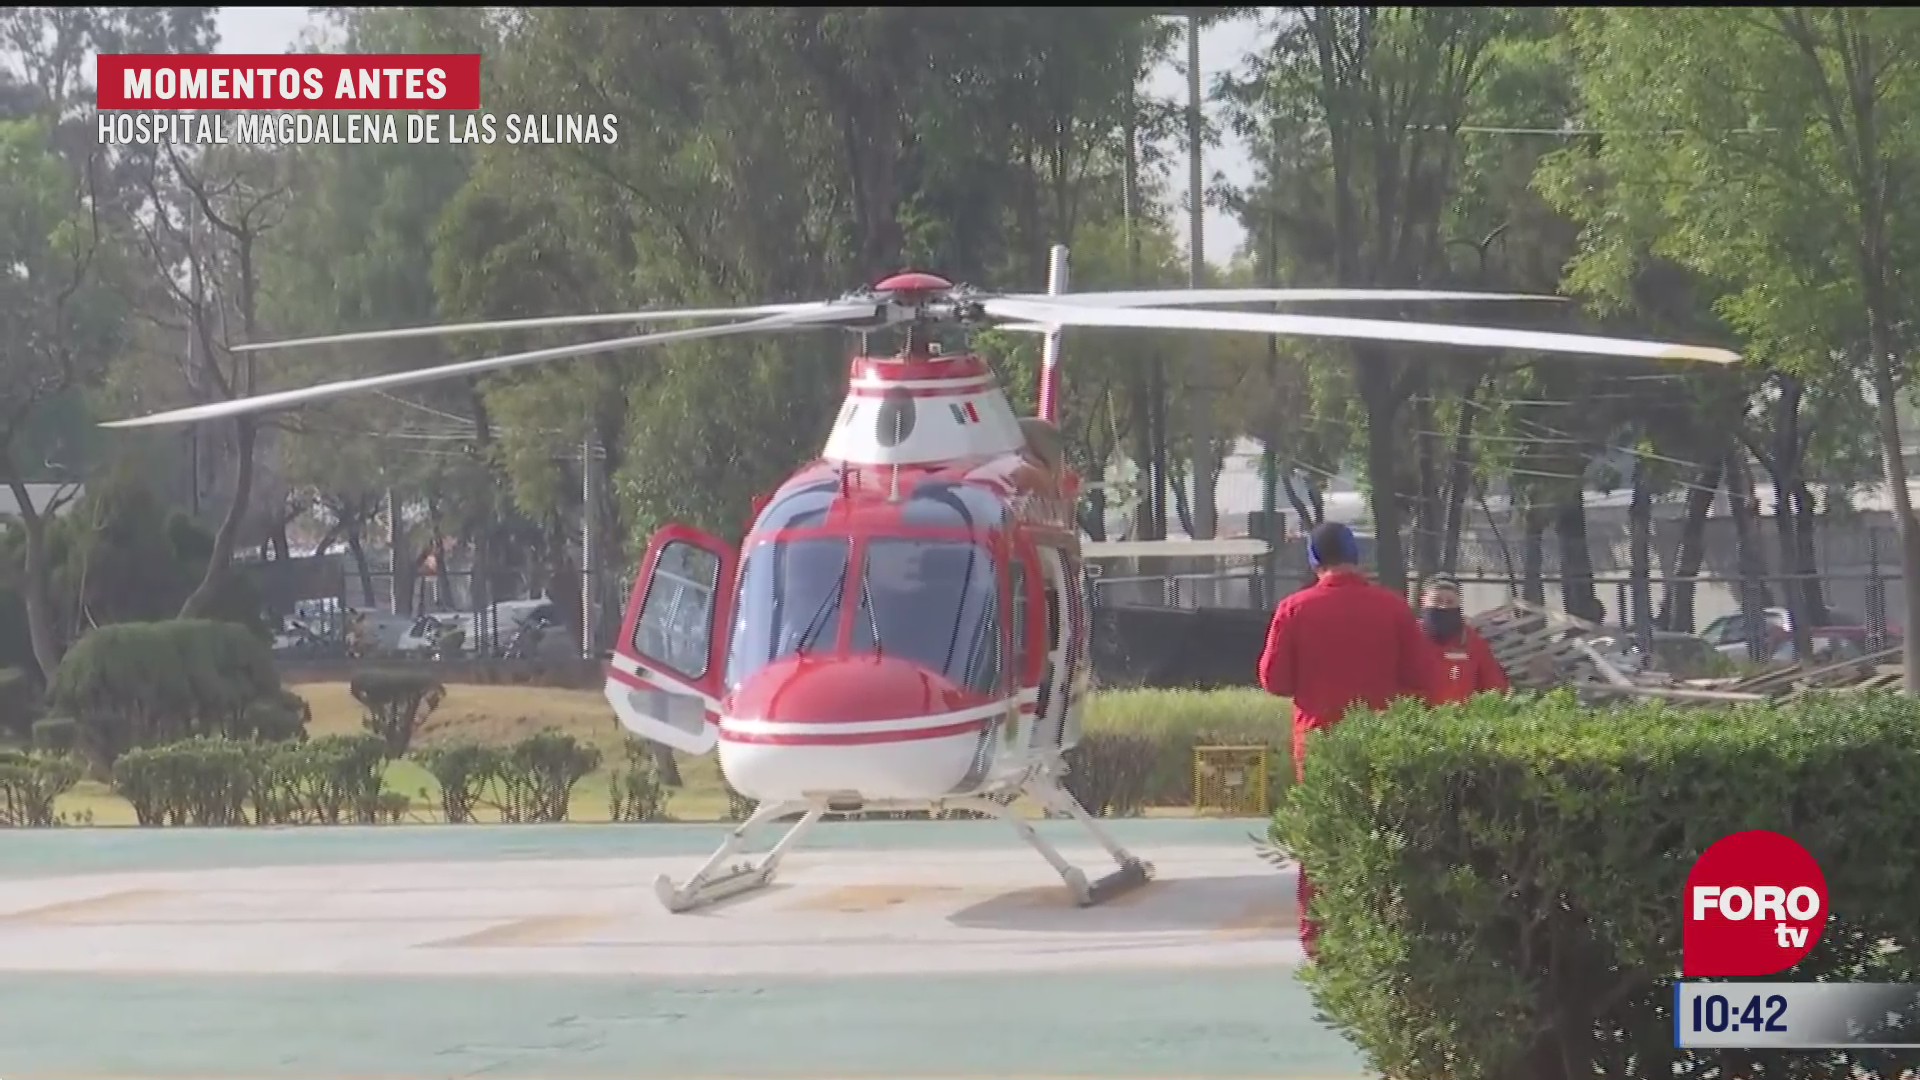 helicoptero traslada a menor lesionado al hospital magdalena de las salinas